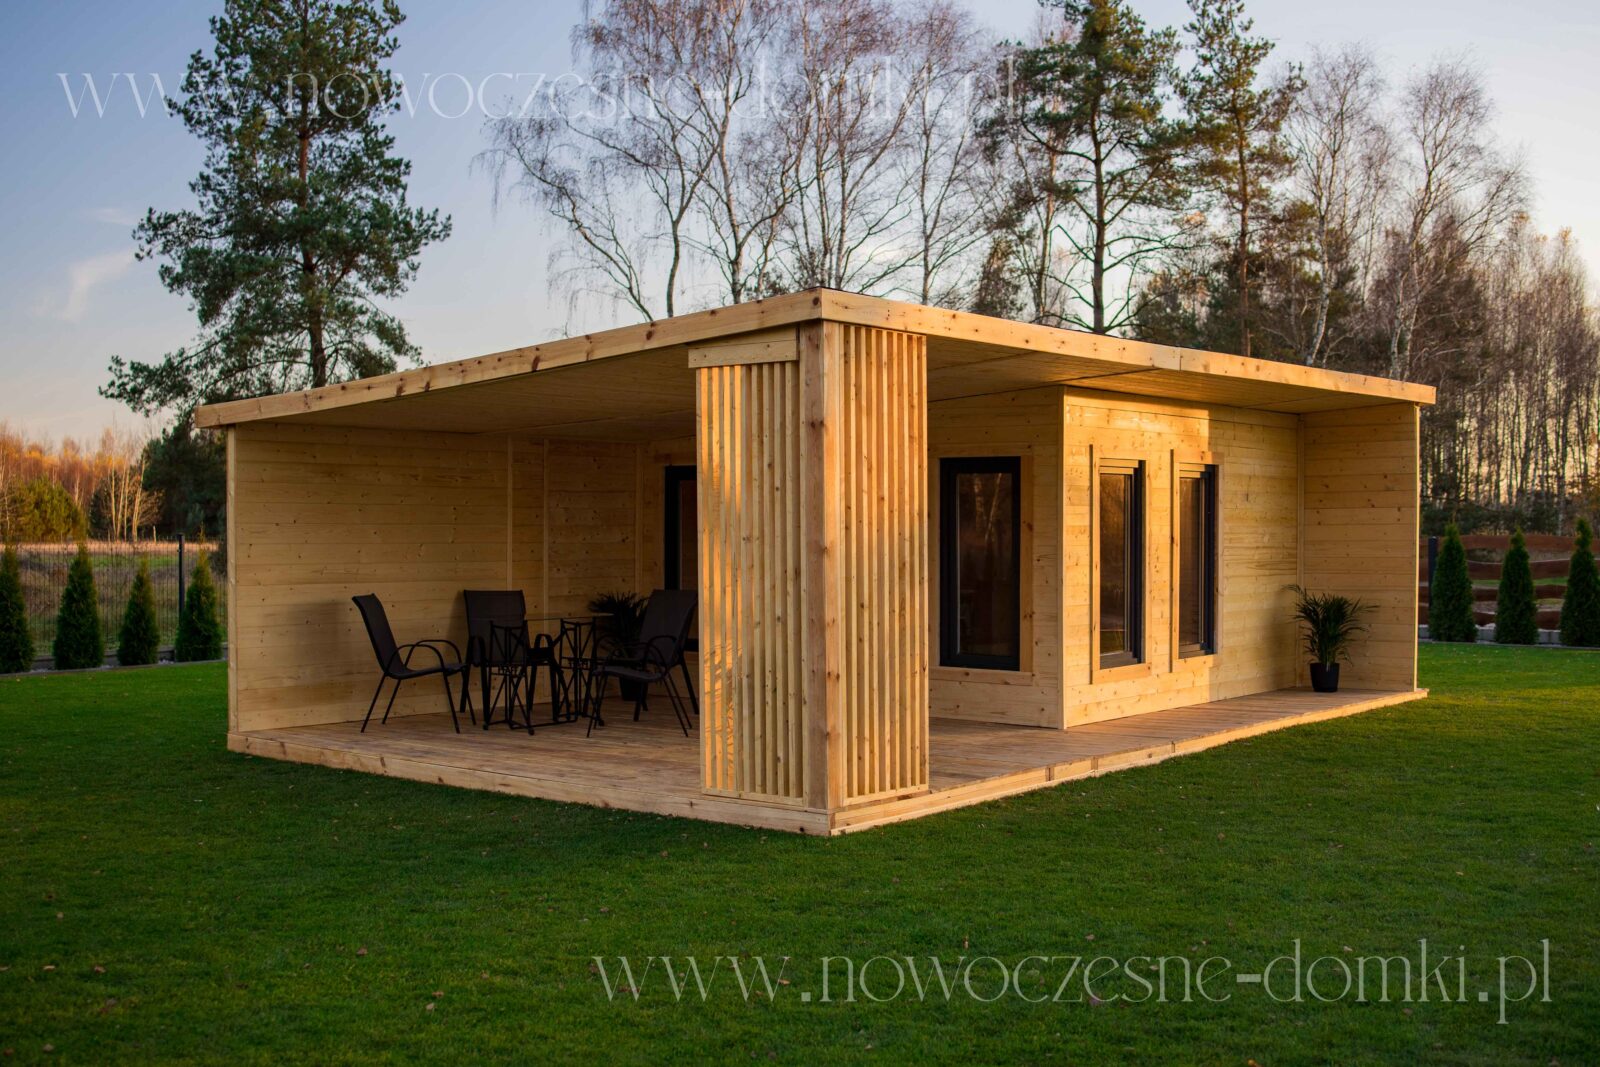 Drewniany domek ogrodowy z tarasem na działkę - Urokliwy domek letniskowy, wykonany z drewna, z przestronnym tarasem, idealny na wypoczynek na świeżym powietrzu.